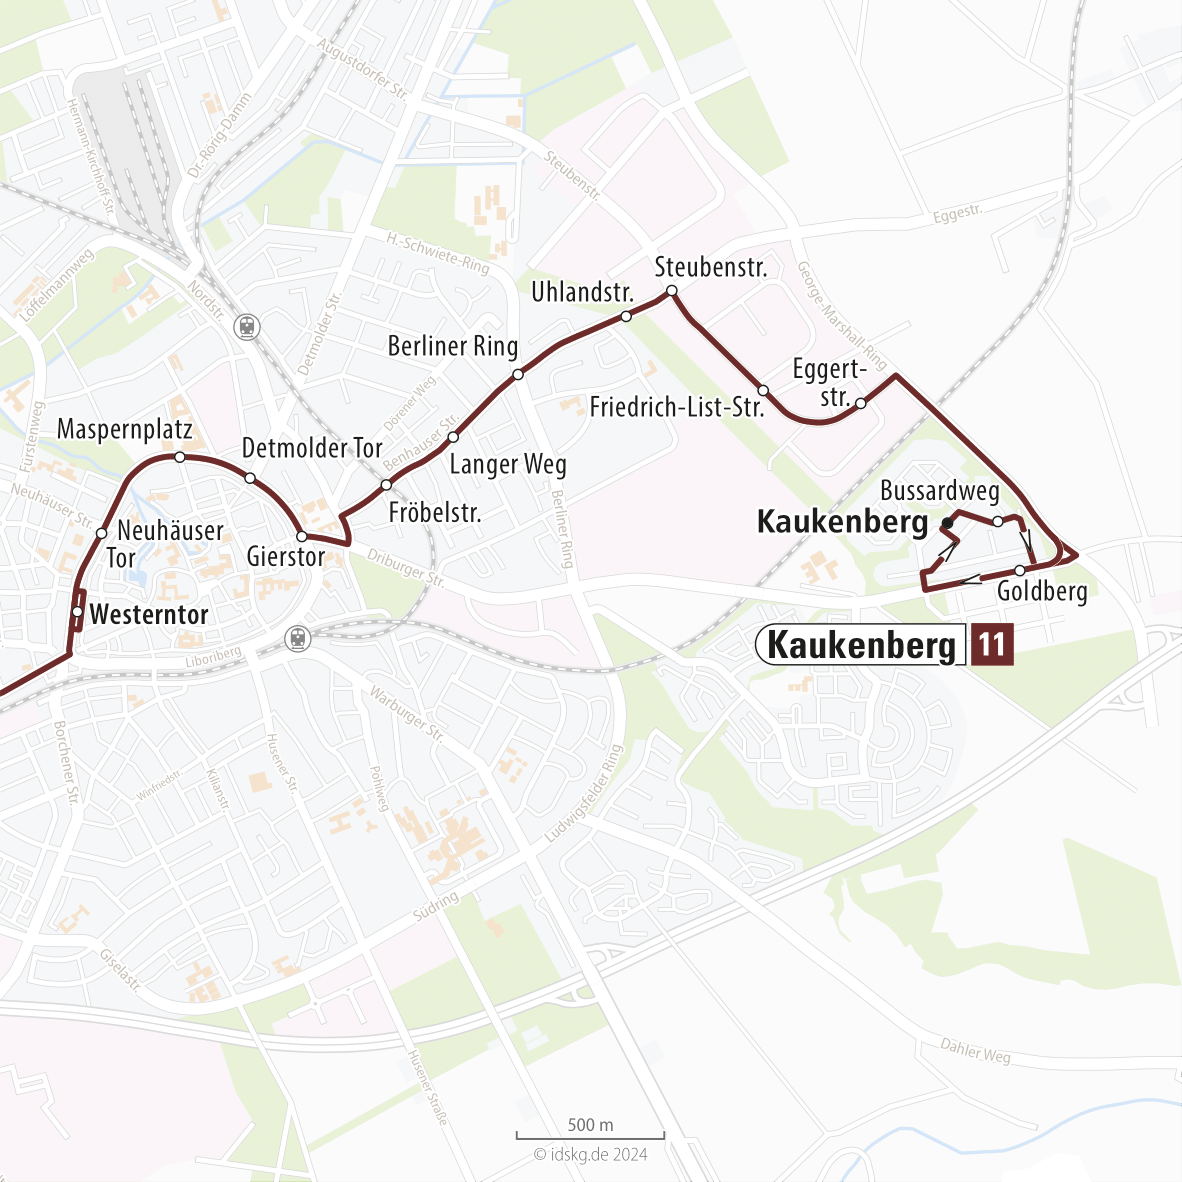 Kartenausschnitt der Linie 11 Westerntor bis Kaukenberg 15x15